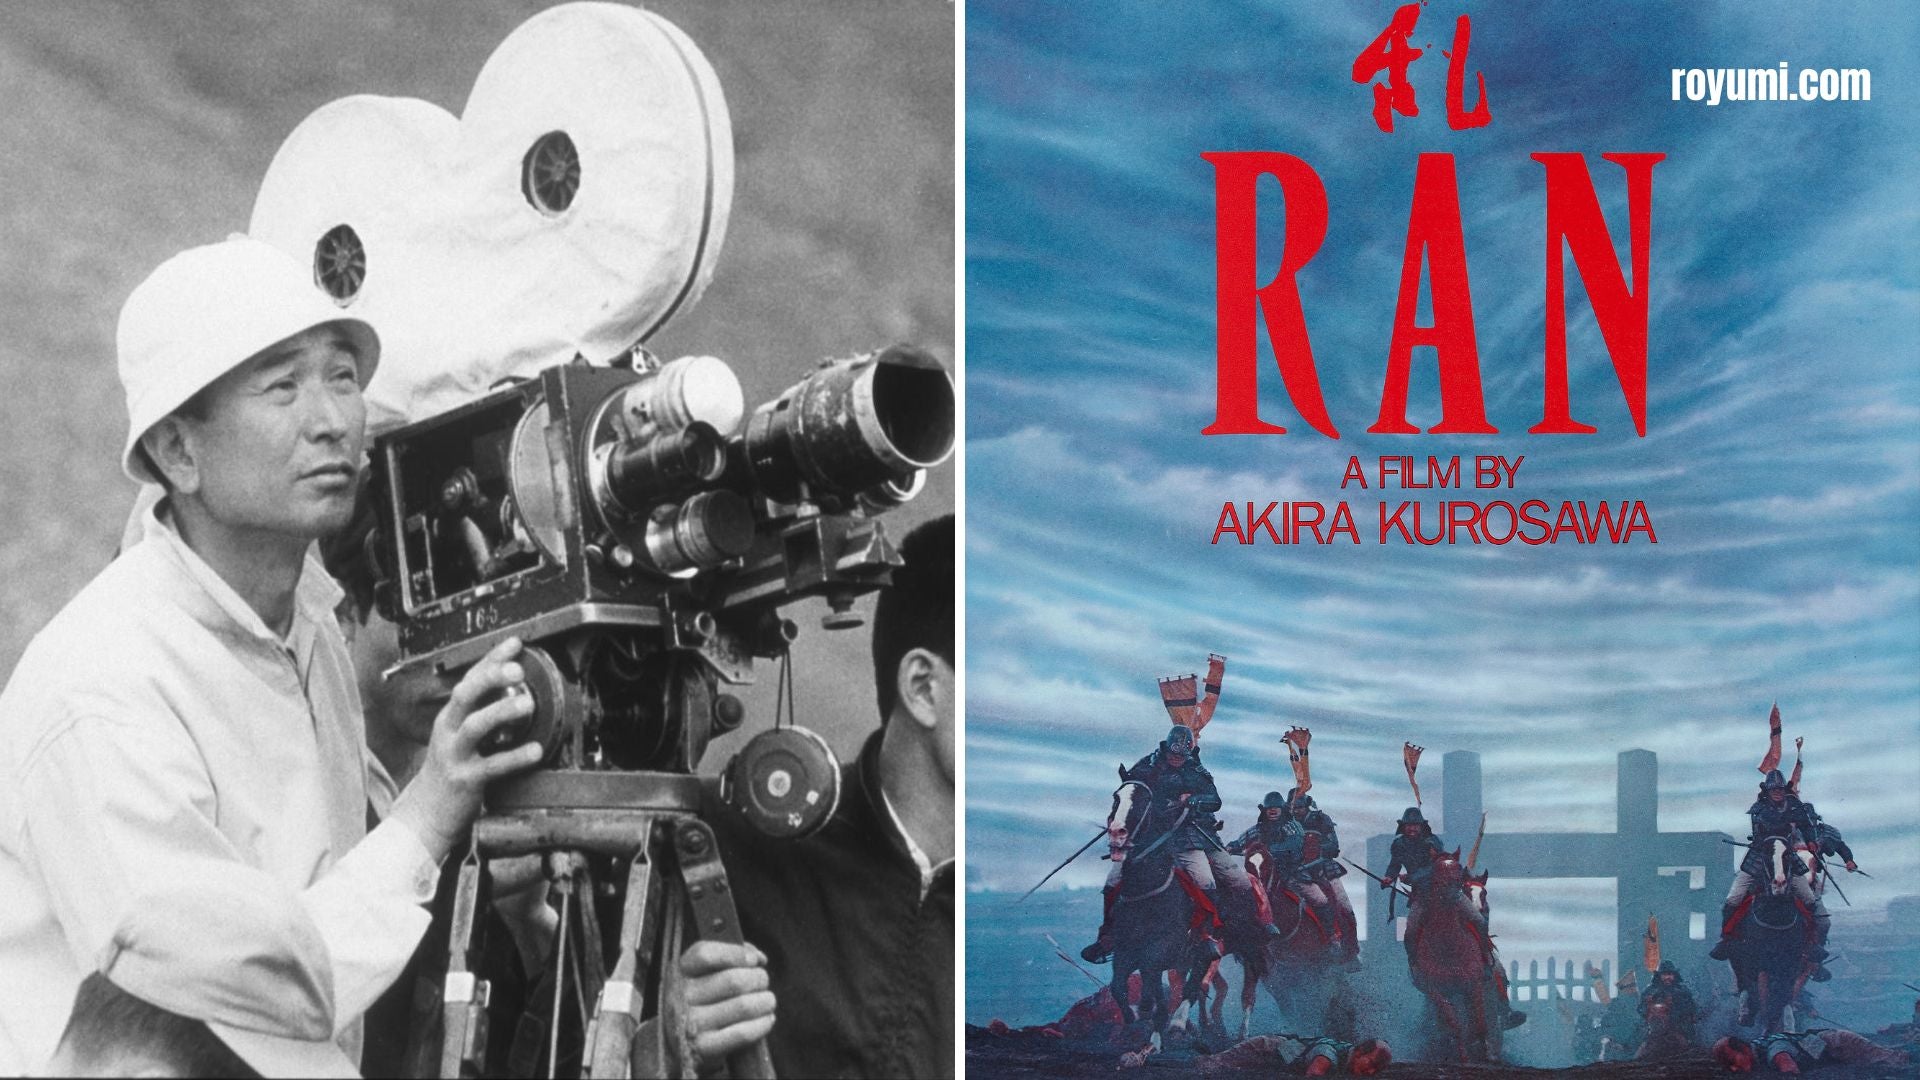 Ran de Akira Kurosawa: Una epopeya épica y emocional sobre el poder y la traición en el Japón feudal